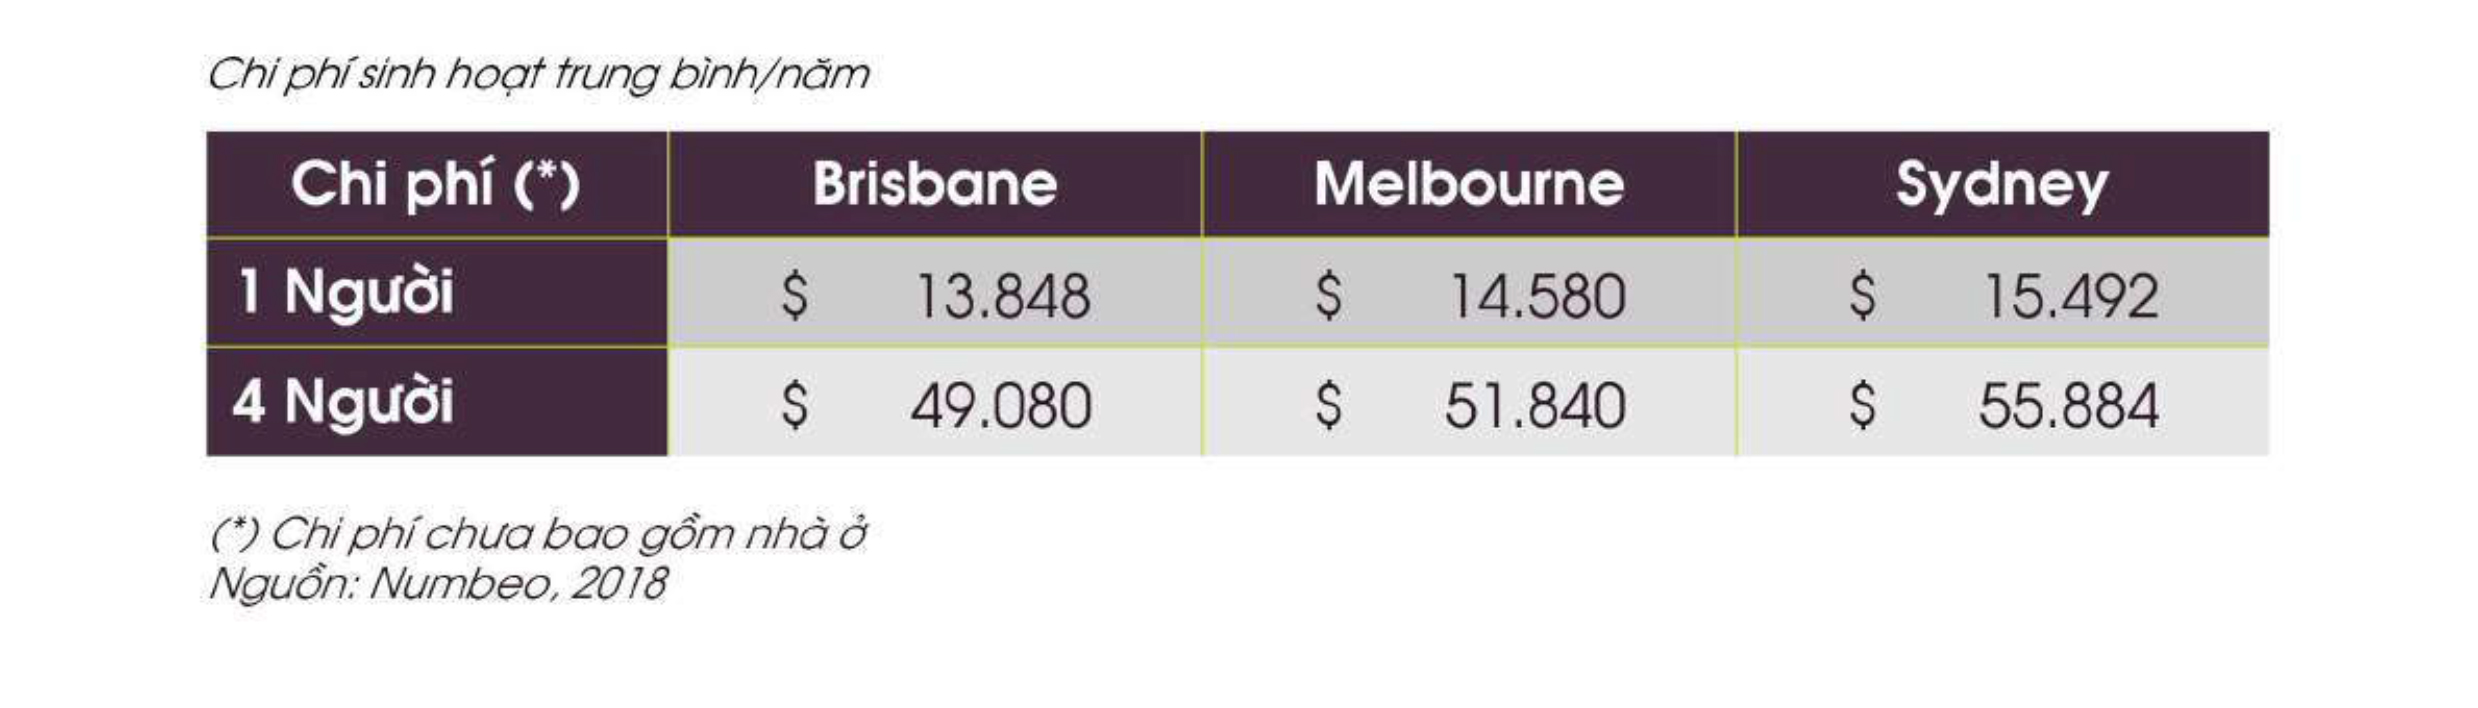 Chi phí sinh hoạt tại bang Brisbane so với các thành phố lớn khác